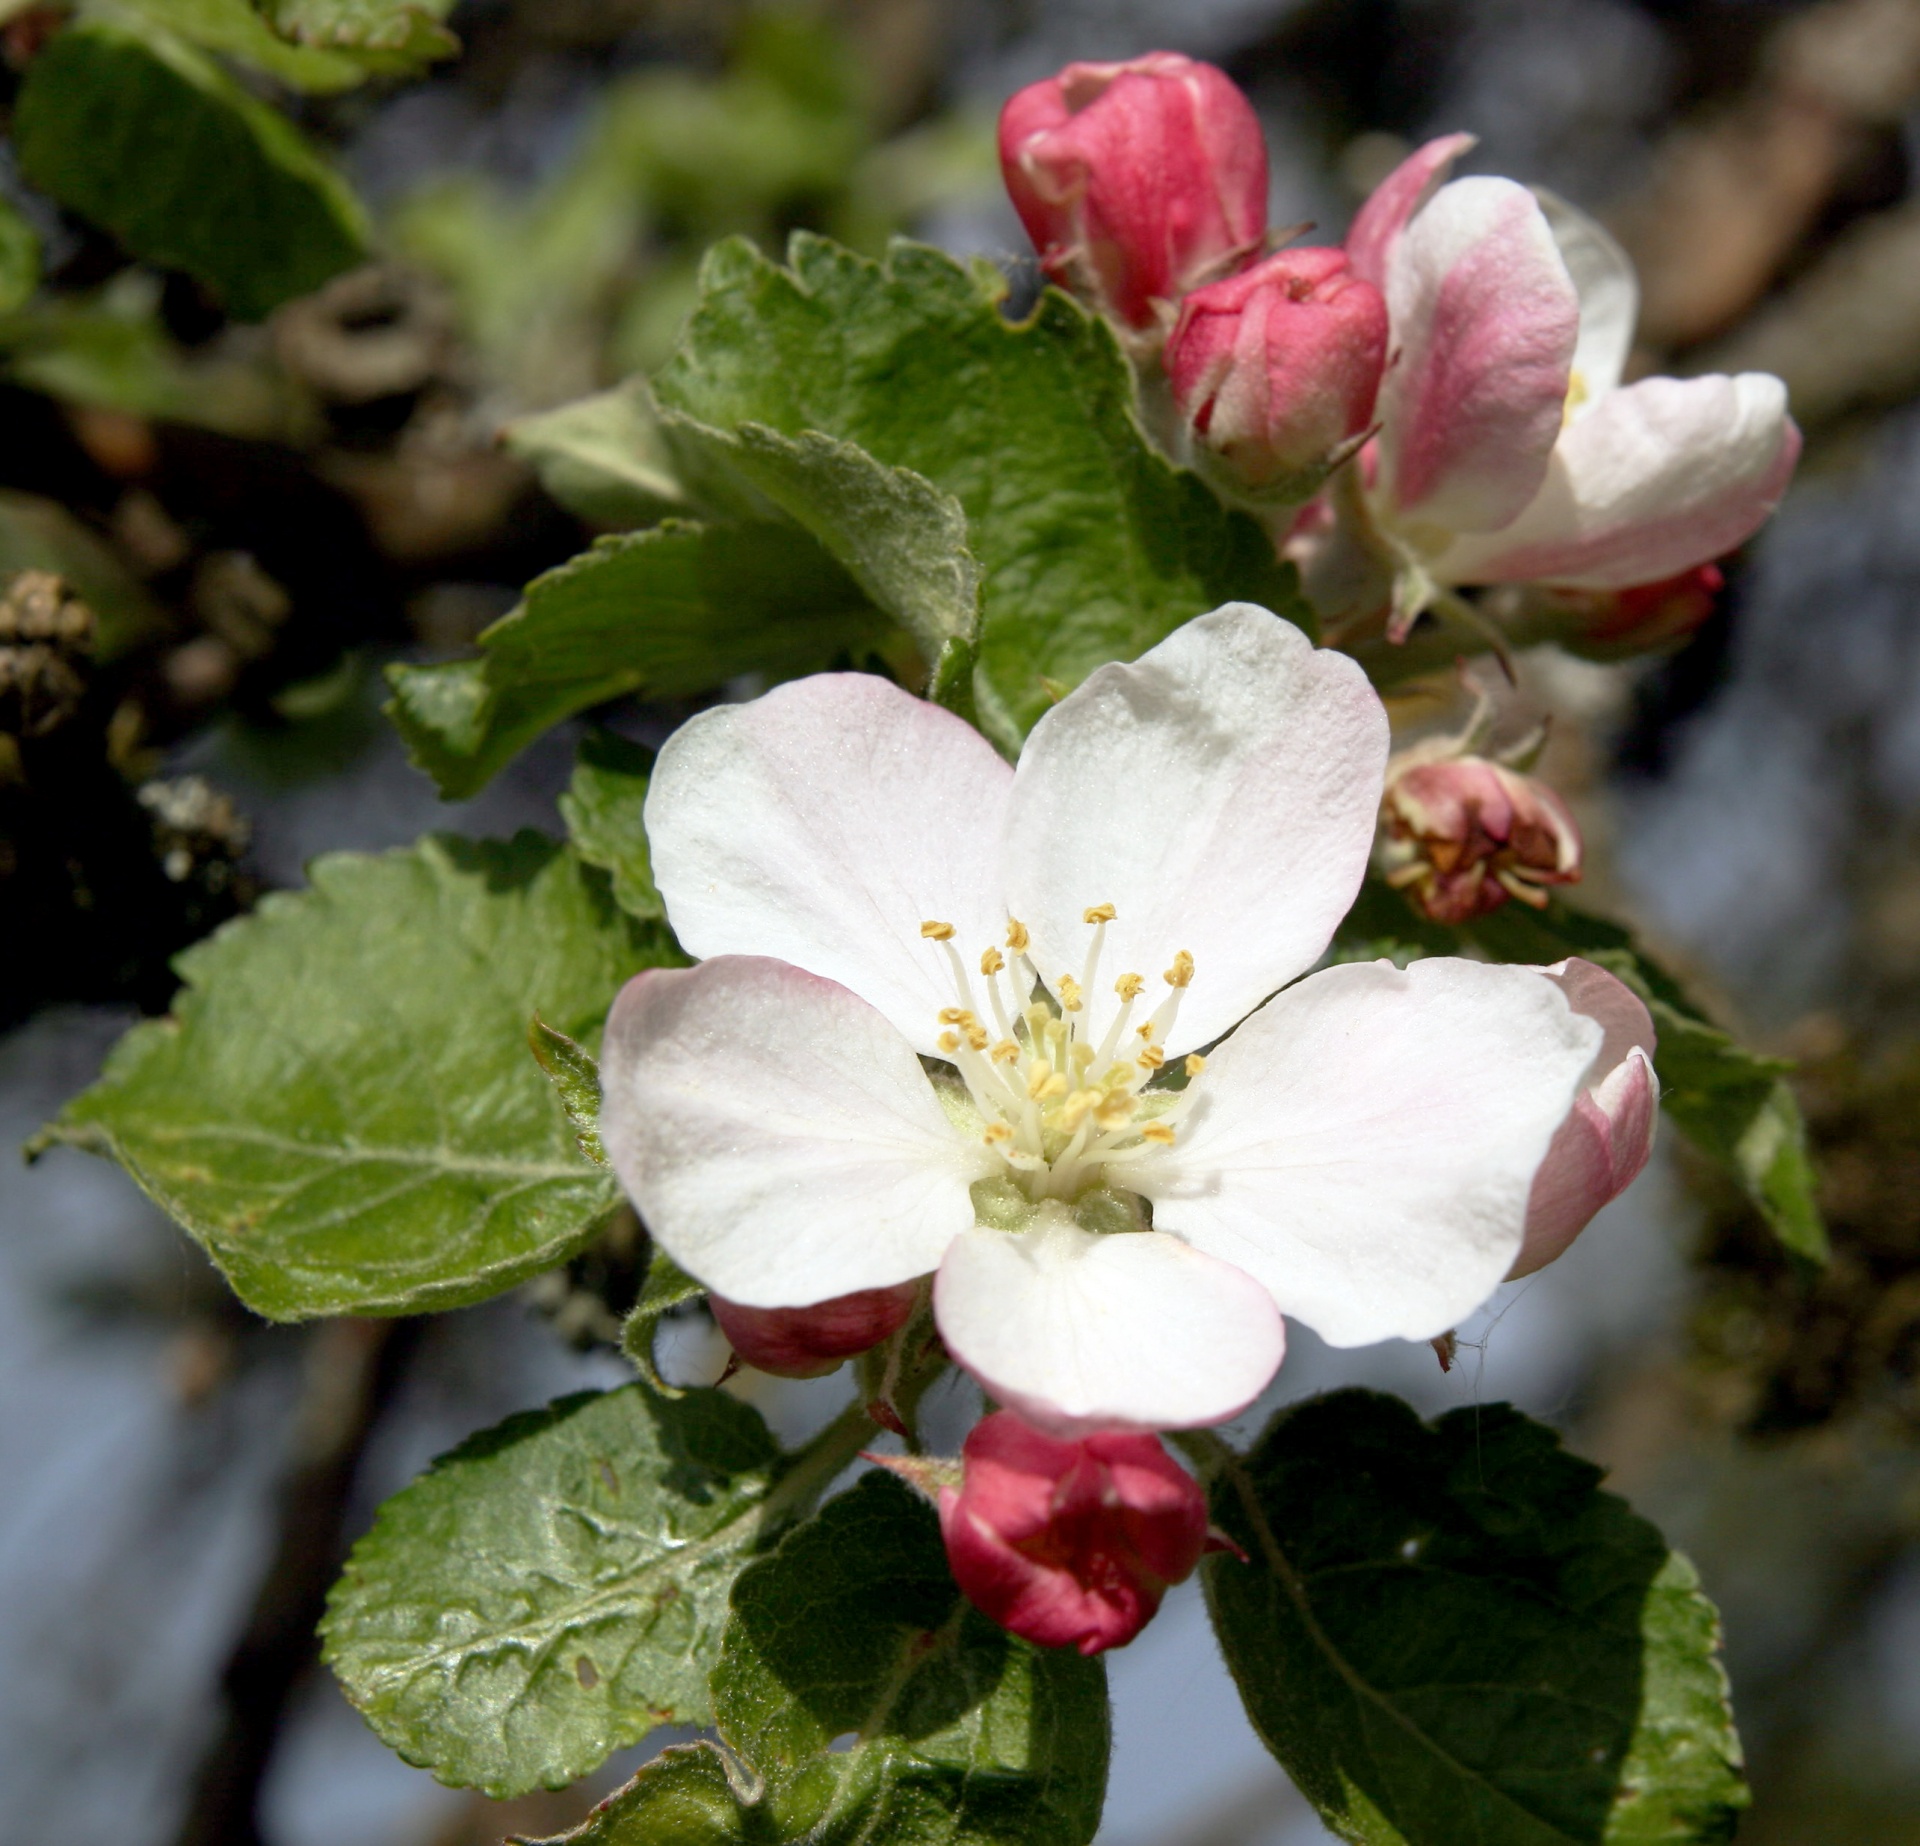 春天 开花 苹果花 - Pixabay上的免费照片 - Pixabay